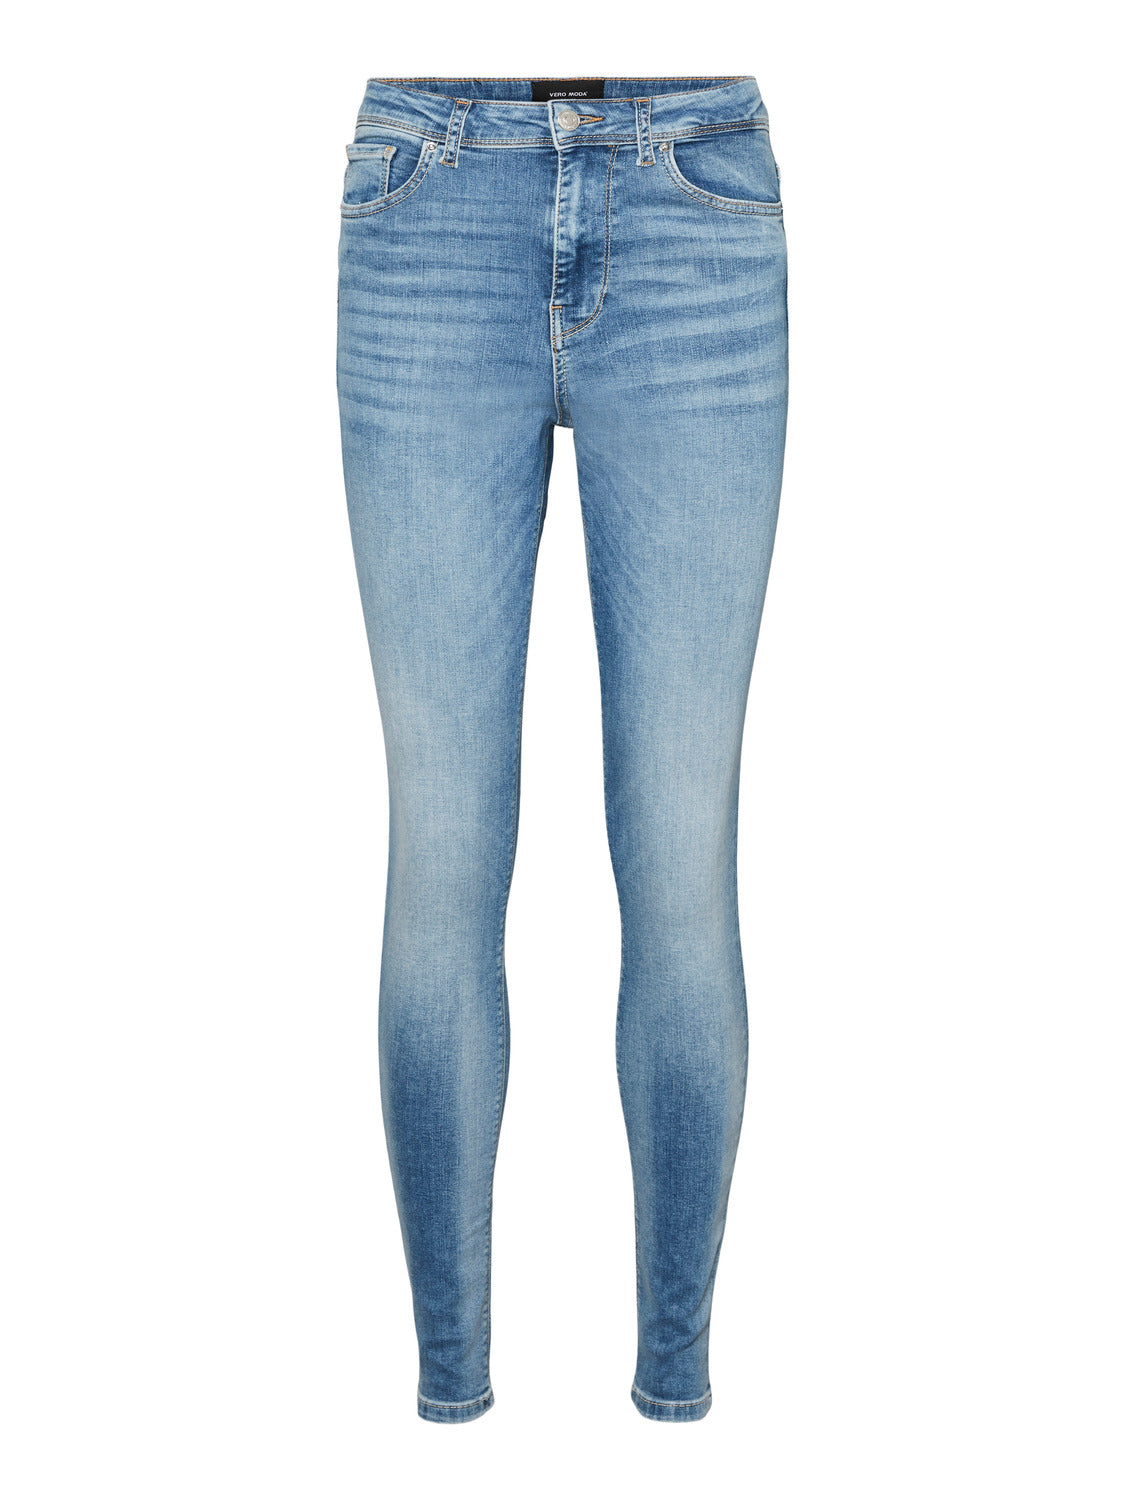 VMSOPHIA hr skinny jeans - light blue denim